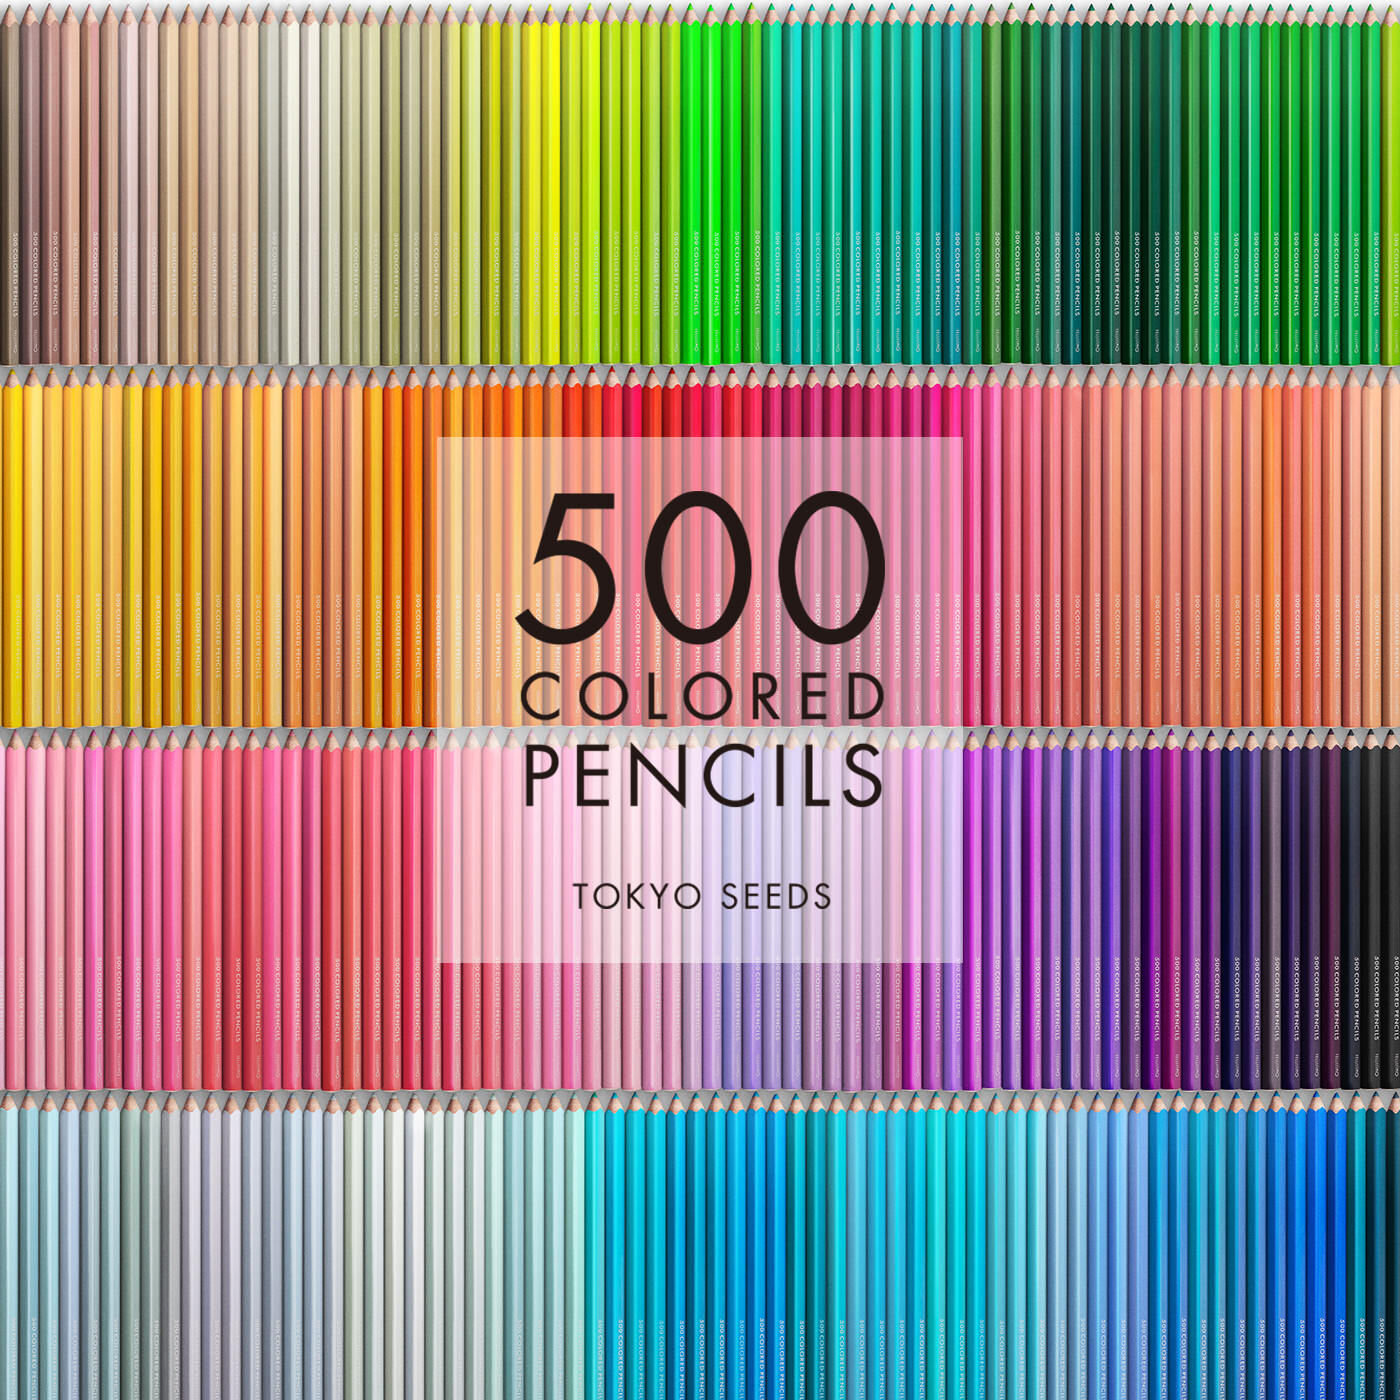 Real Stock|【6/500 TANGY FRESHNESS】500色の色えんぴつ TOKYO SEEDS|1992年、世界初の「500色」という膨大な色数の色えんぴつが誕生して以来、その販売数は発売当初から合わせると、世界55ヵ国10万セット以上。今回、メイド・イン・ジャパンにこだわり、すべてが新しく生まれ変わって登場しました。